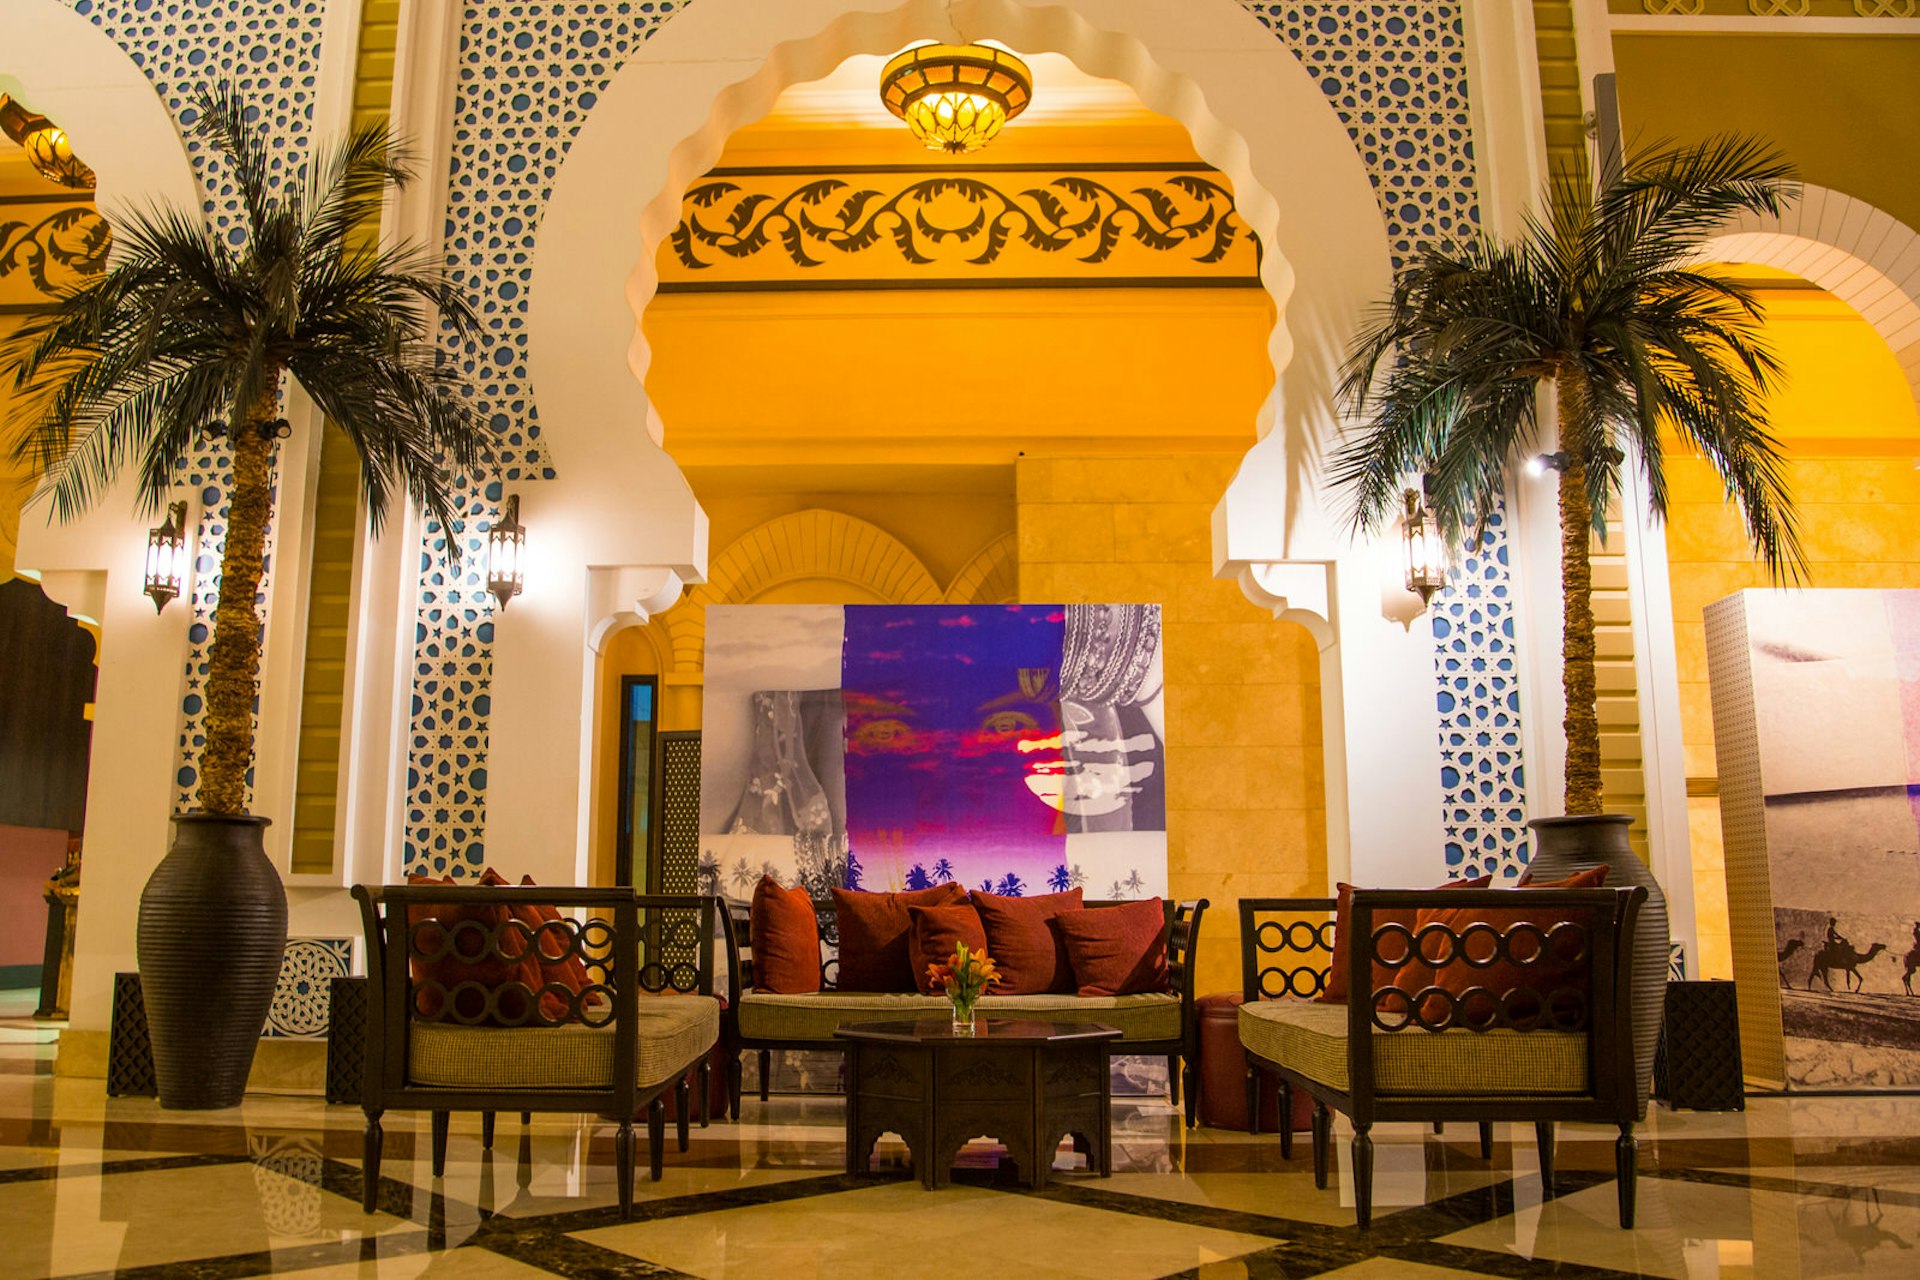 Hotelllobby i Dubai, Förenade Arabemiraten.  Träsoffor med djupröda kuddar är arrangerade under en utarbetad valvgång genom vilken vi kan se lite modern konst.  Valvet flankeras av höga, krukväxta palmer. 